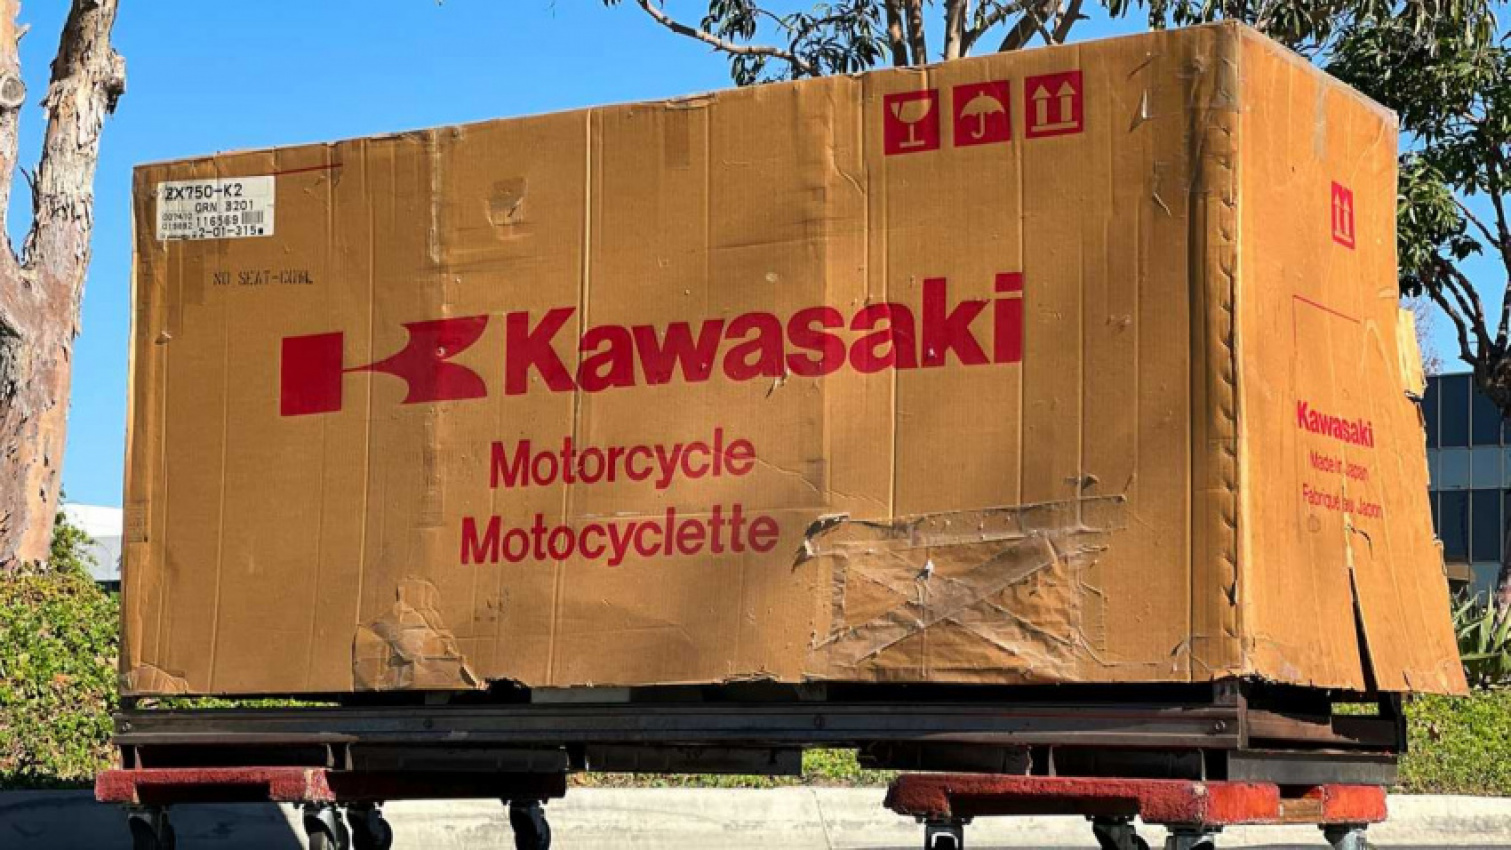 autos, cars, kawasaki, homologation for sale: 1992 kawasaki zx-7r k2 in original crate